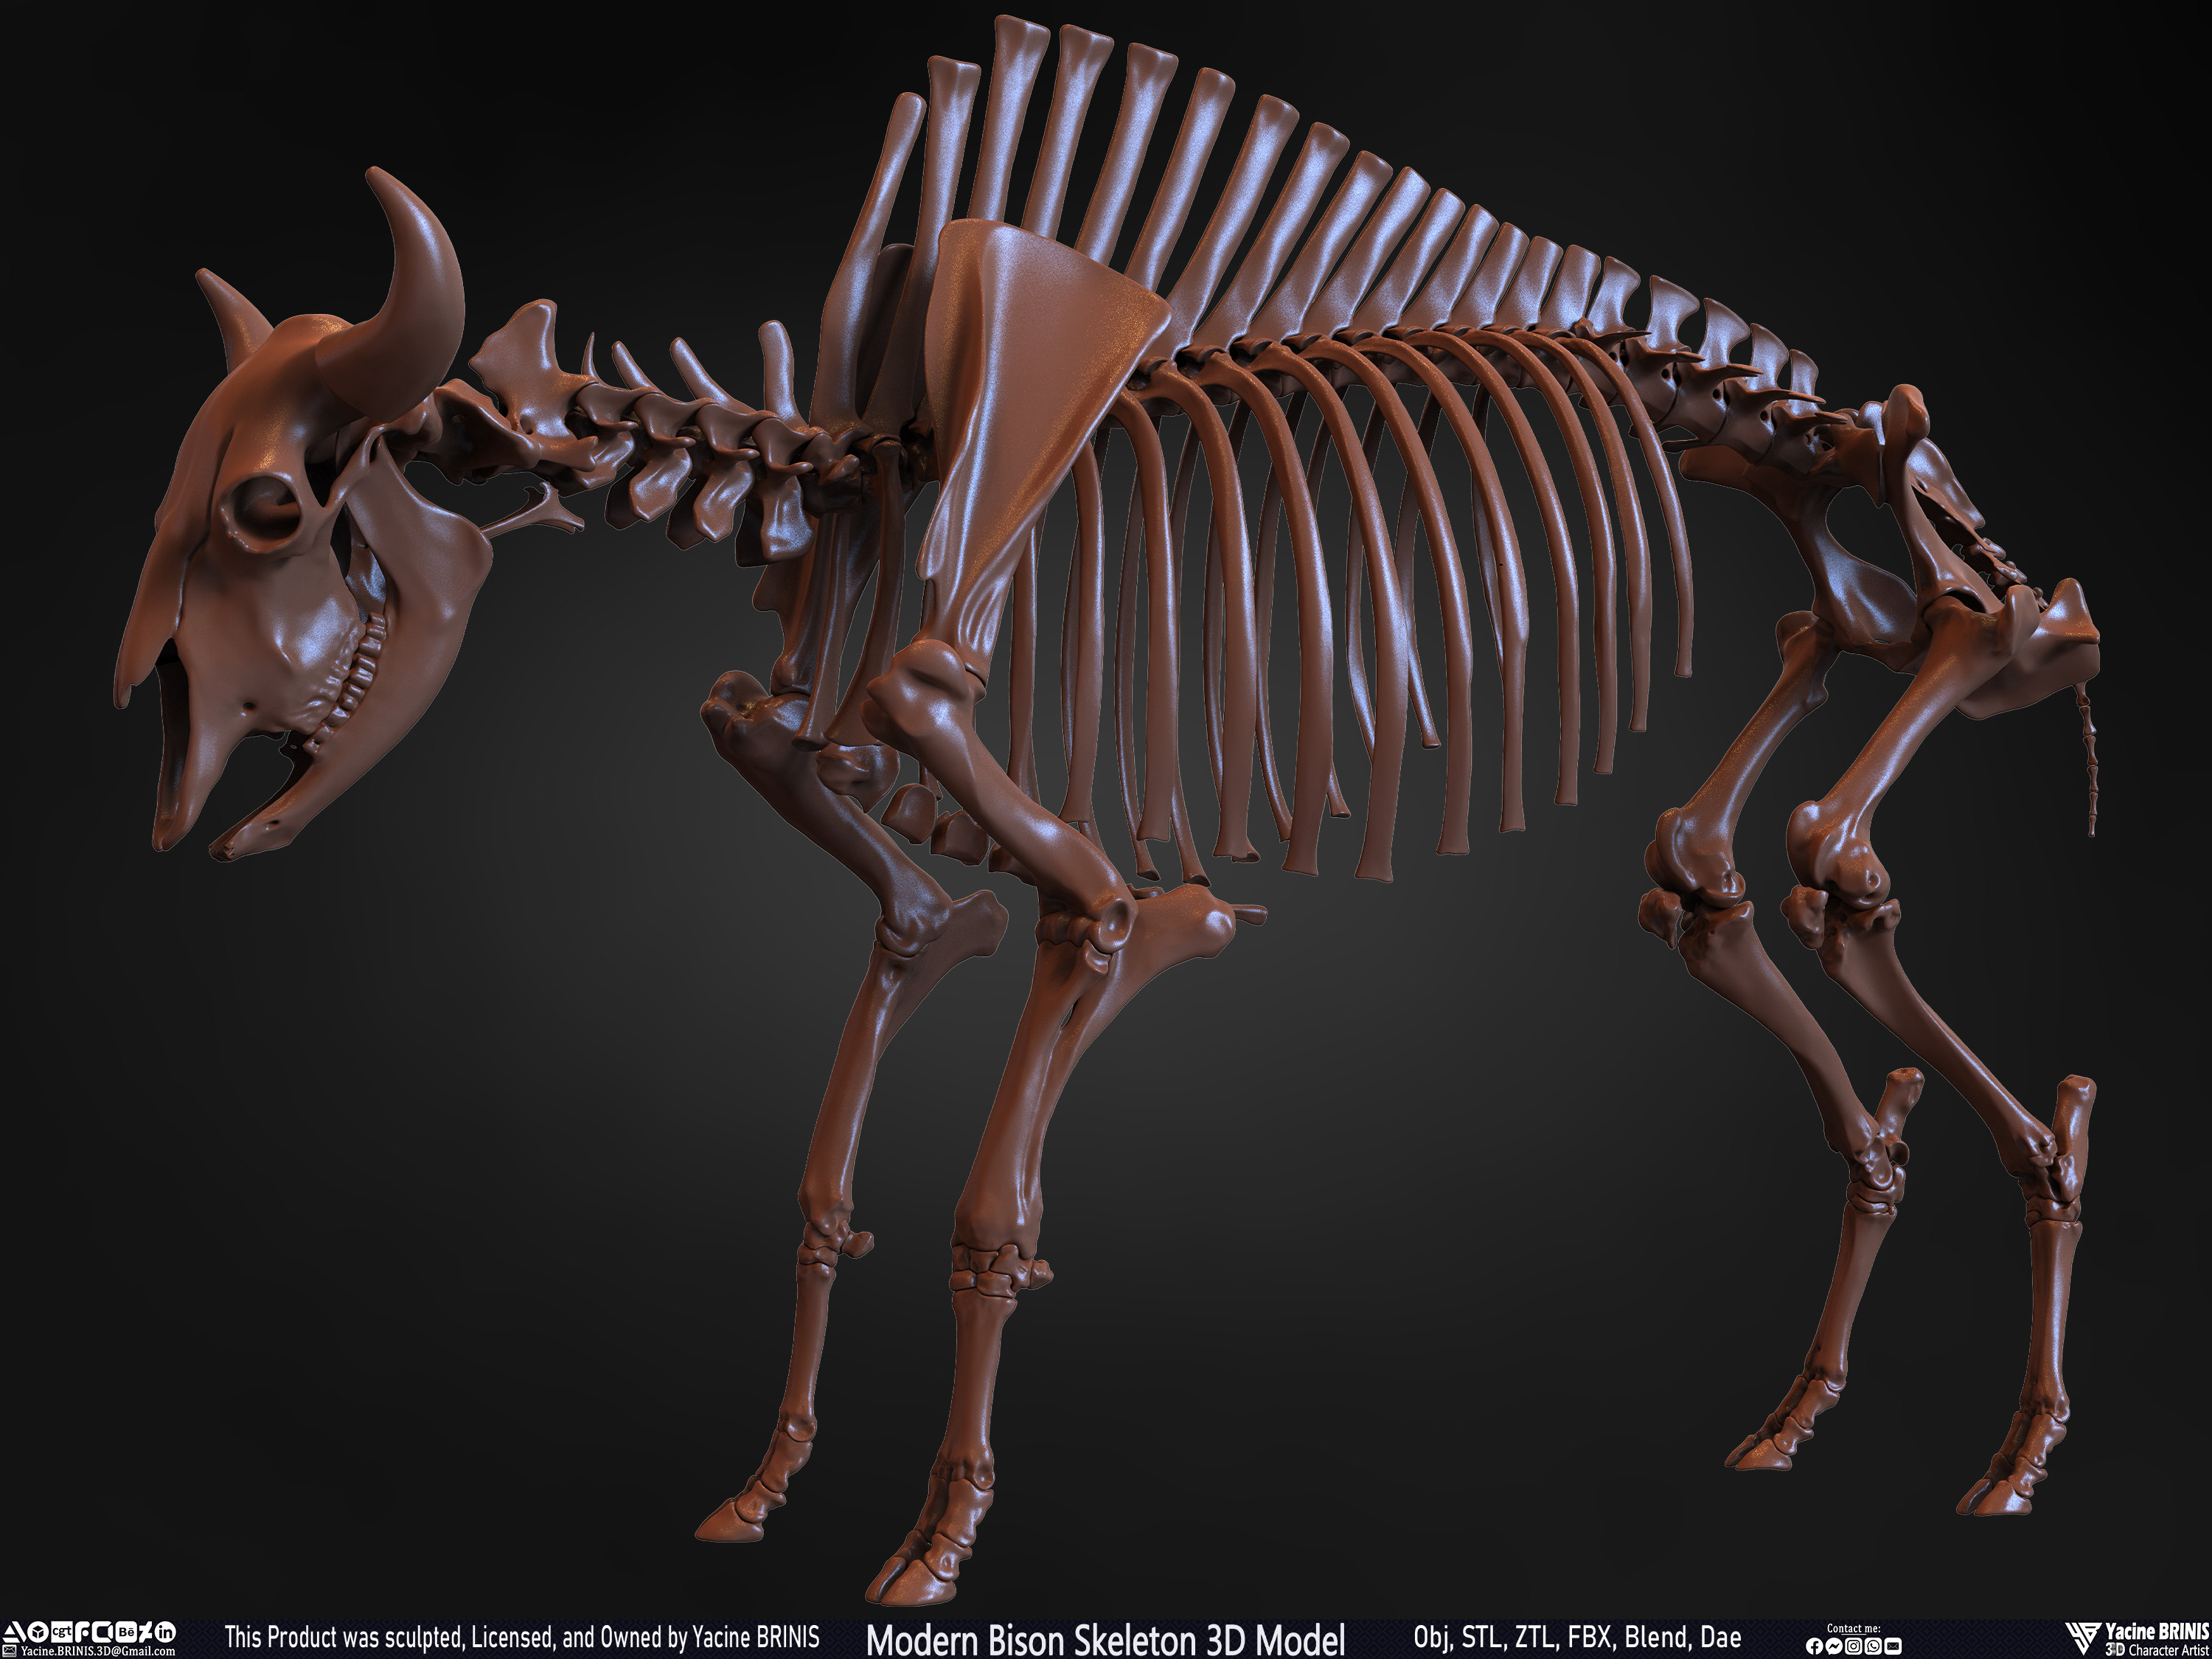 Modern Bison Skeleton 3D Model Sculpted by Yacine BRINIS Set 016